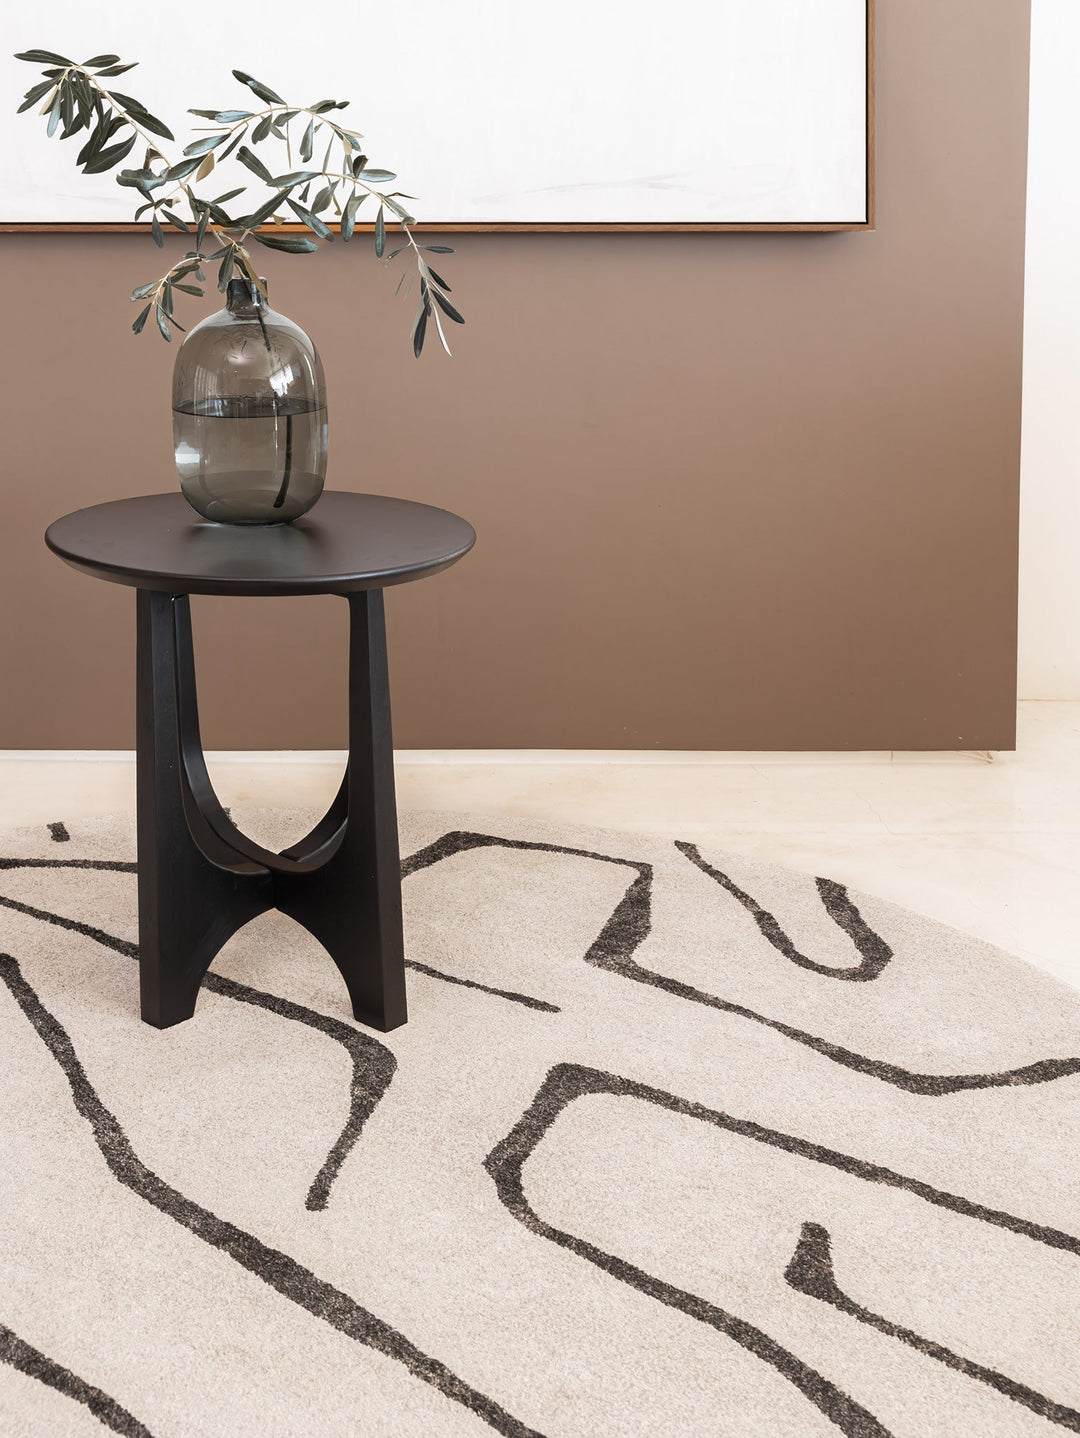 Enigmatic Round Rug in Chalk - Round Rug- Hertex Haus Online - Design